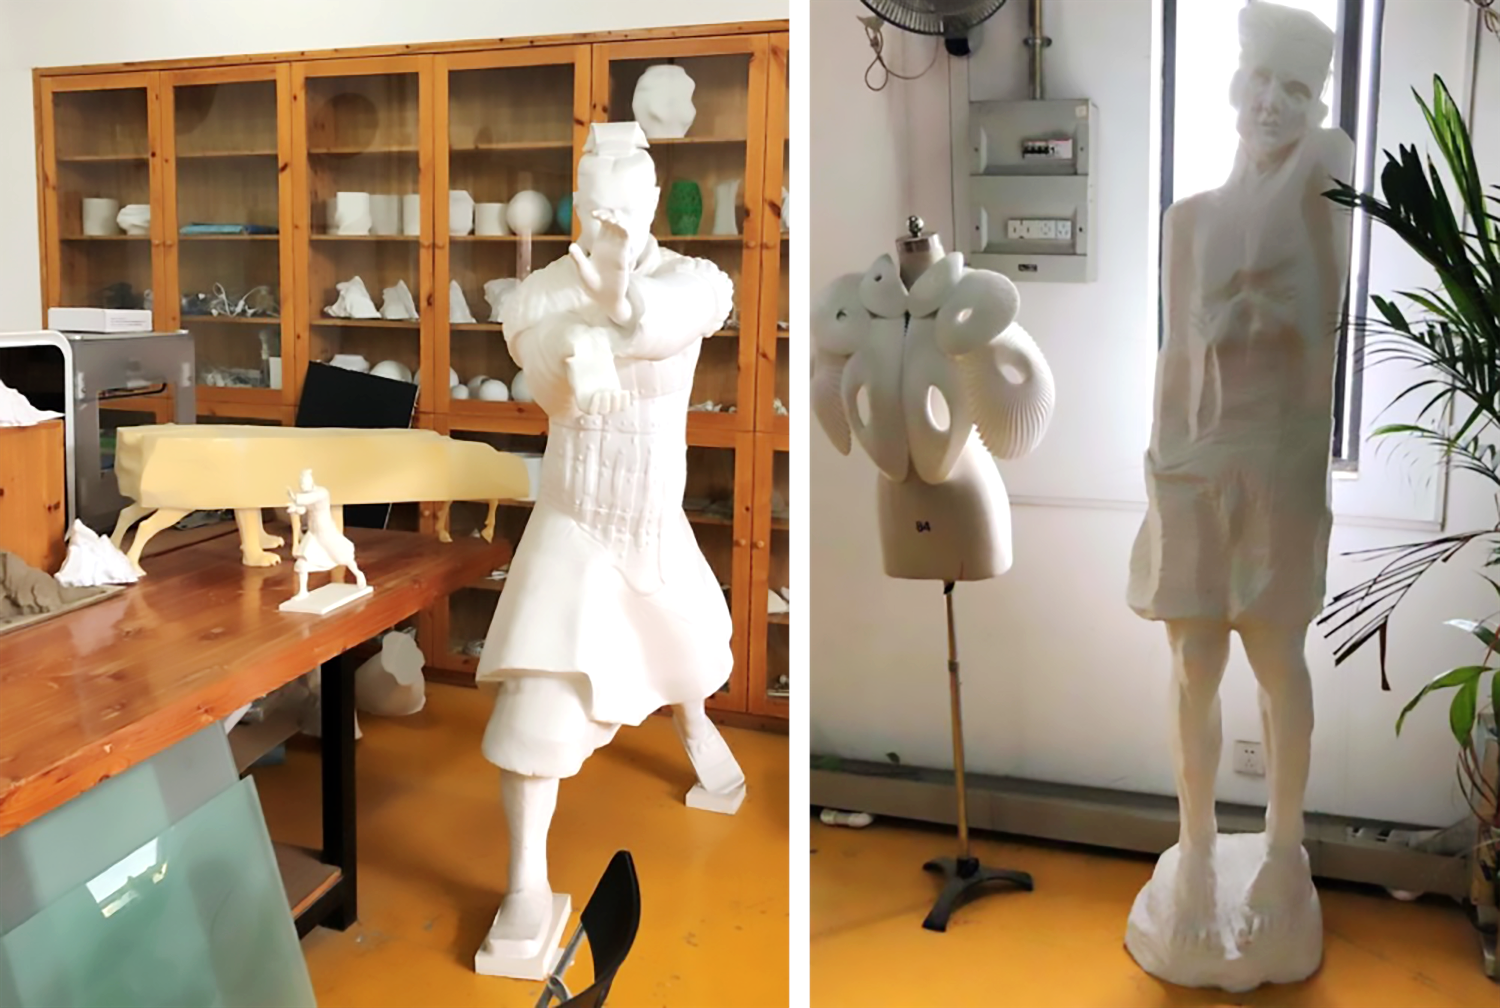 Toepassing van SLS nylon 3D-printtechnologie in kunstontwerplaboratoria van hogescholen en universiteiten